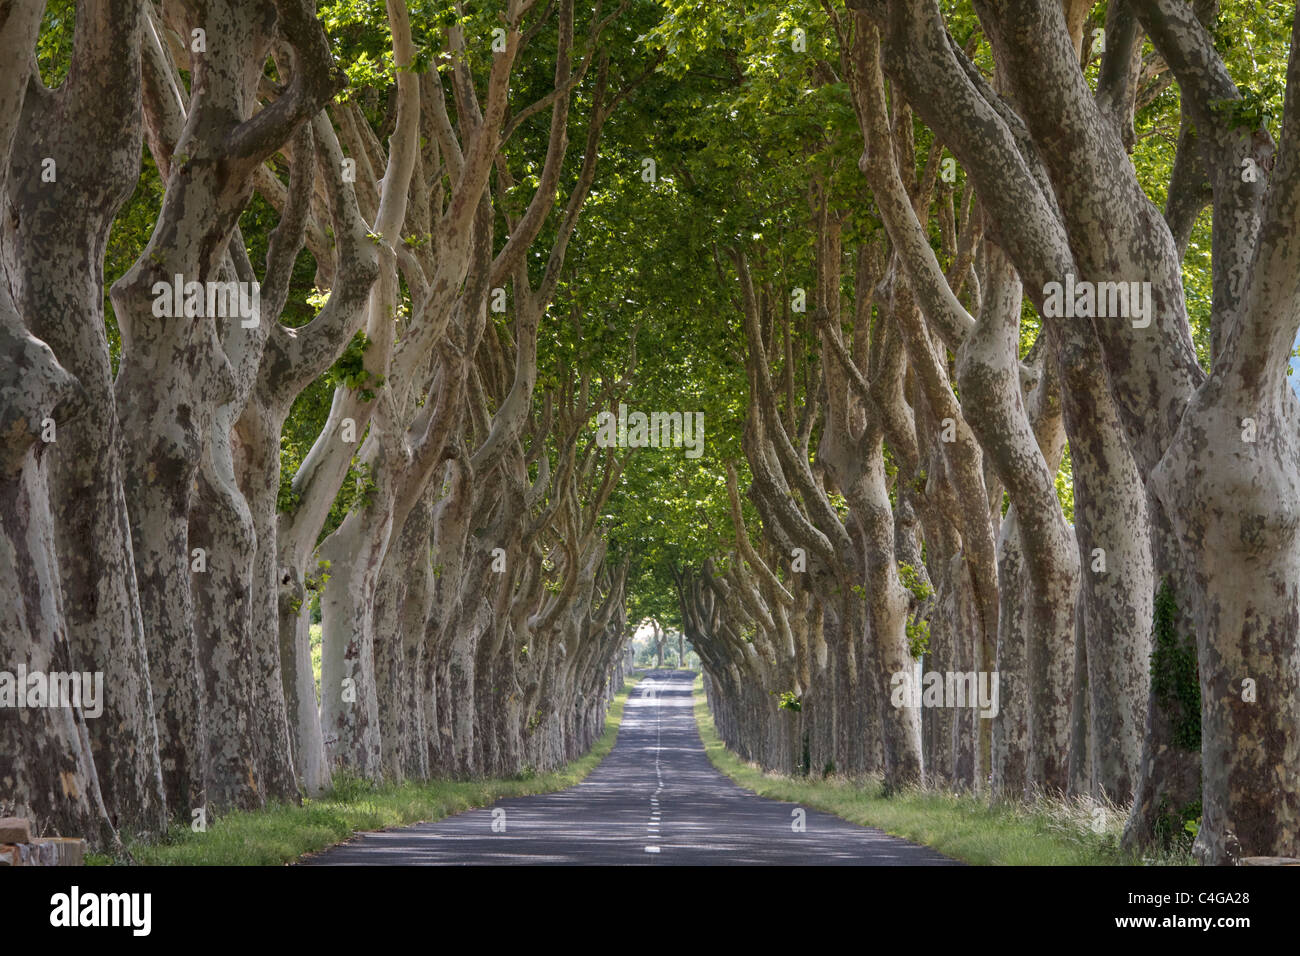 Schöne symmetrische von Bäumen gesäumten Straße in der Nähe von Lagrasse in der Region Languedoc-Roussillon im Süden Frankreichs. Stockfoto